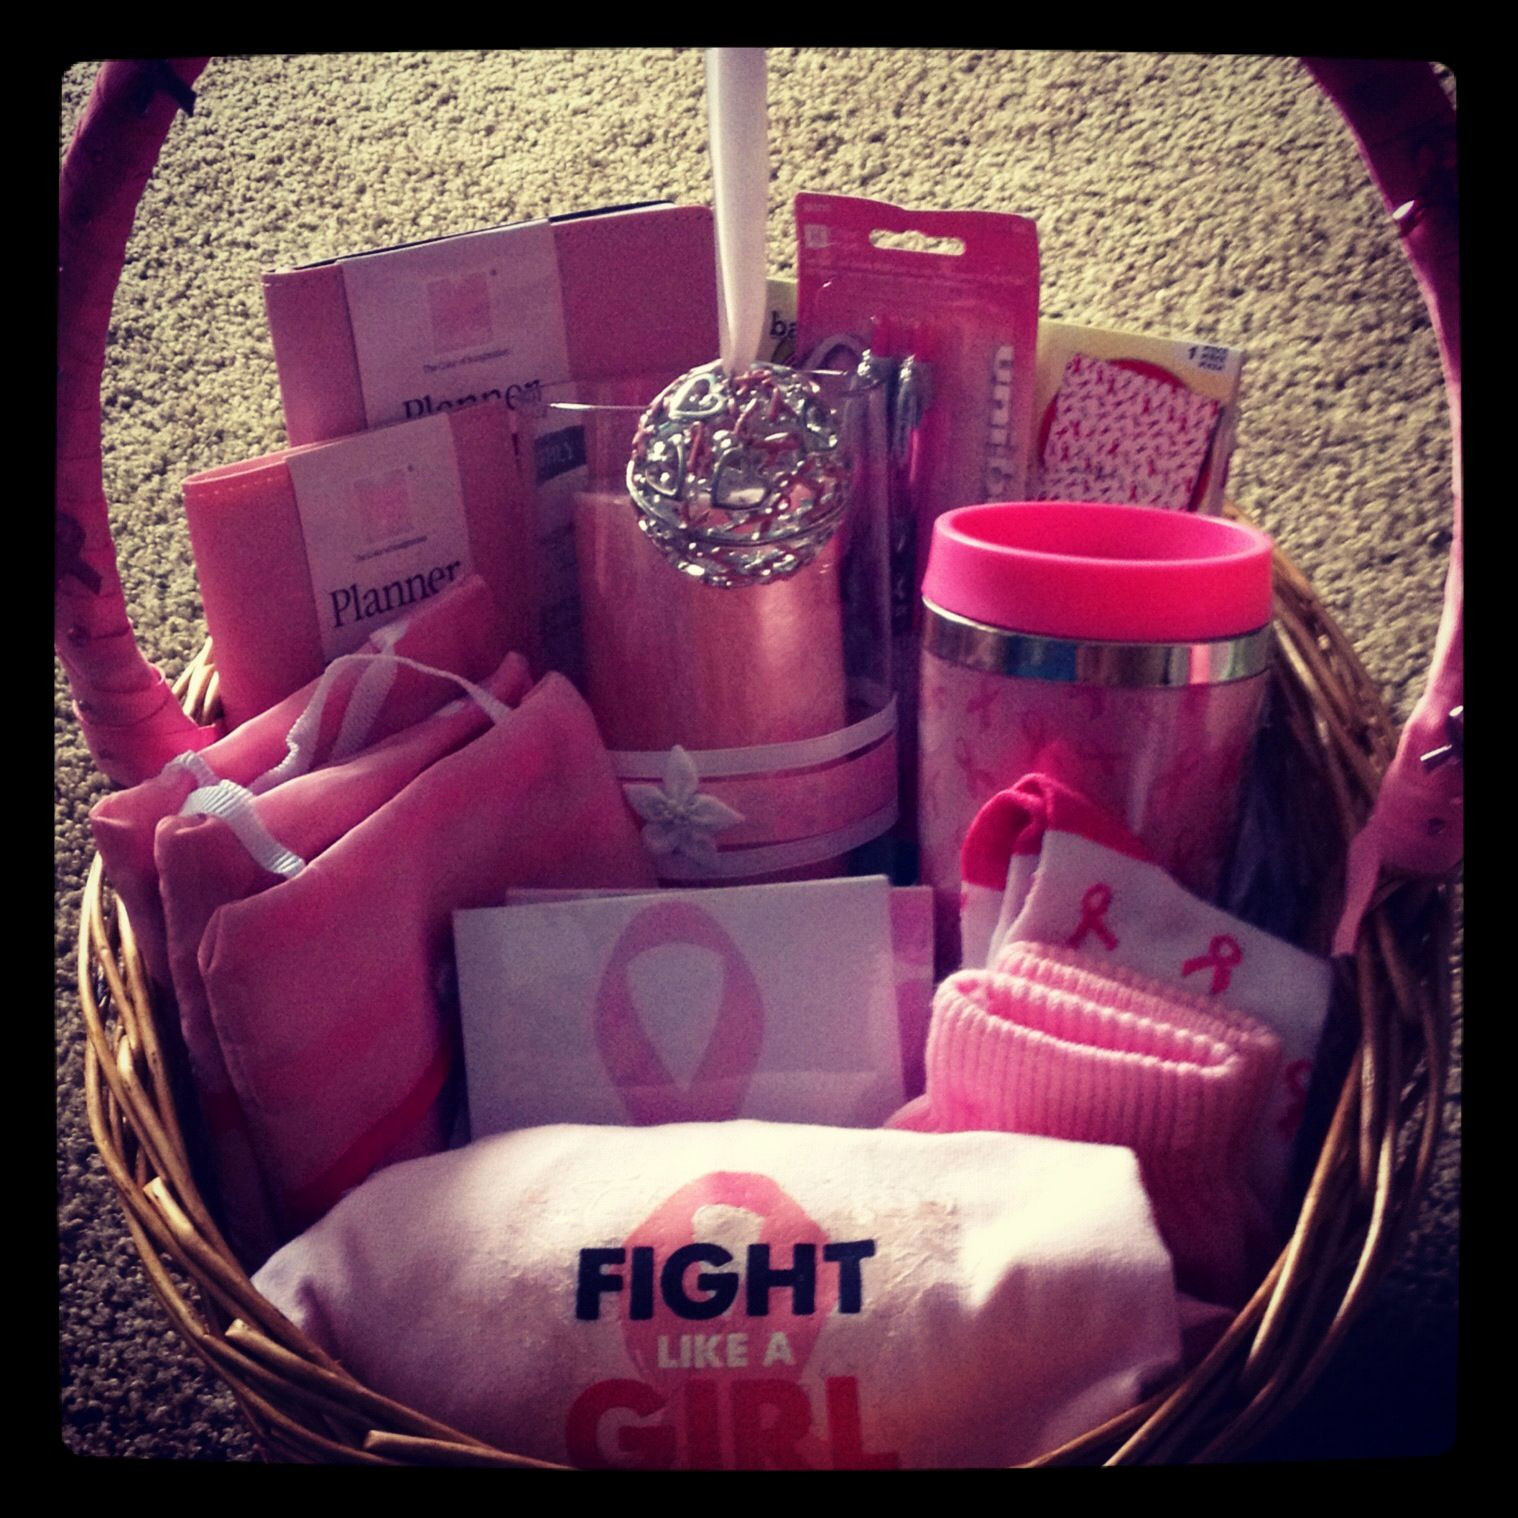 Breast Cancer Gift Basket Ideas
 Breast cancer awareness basket